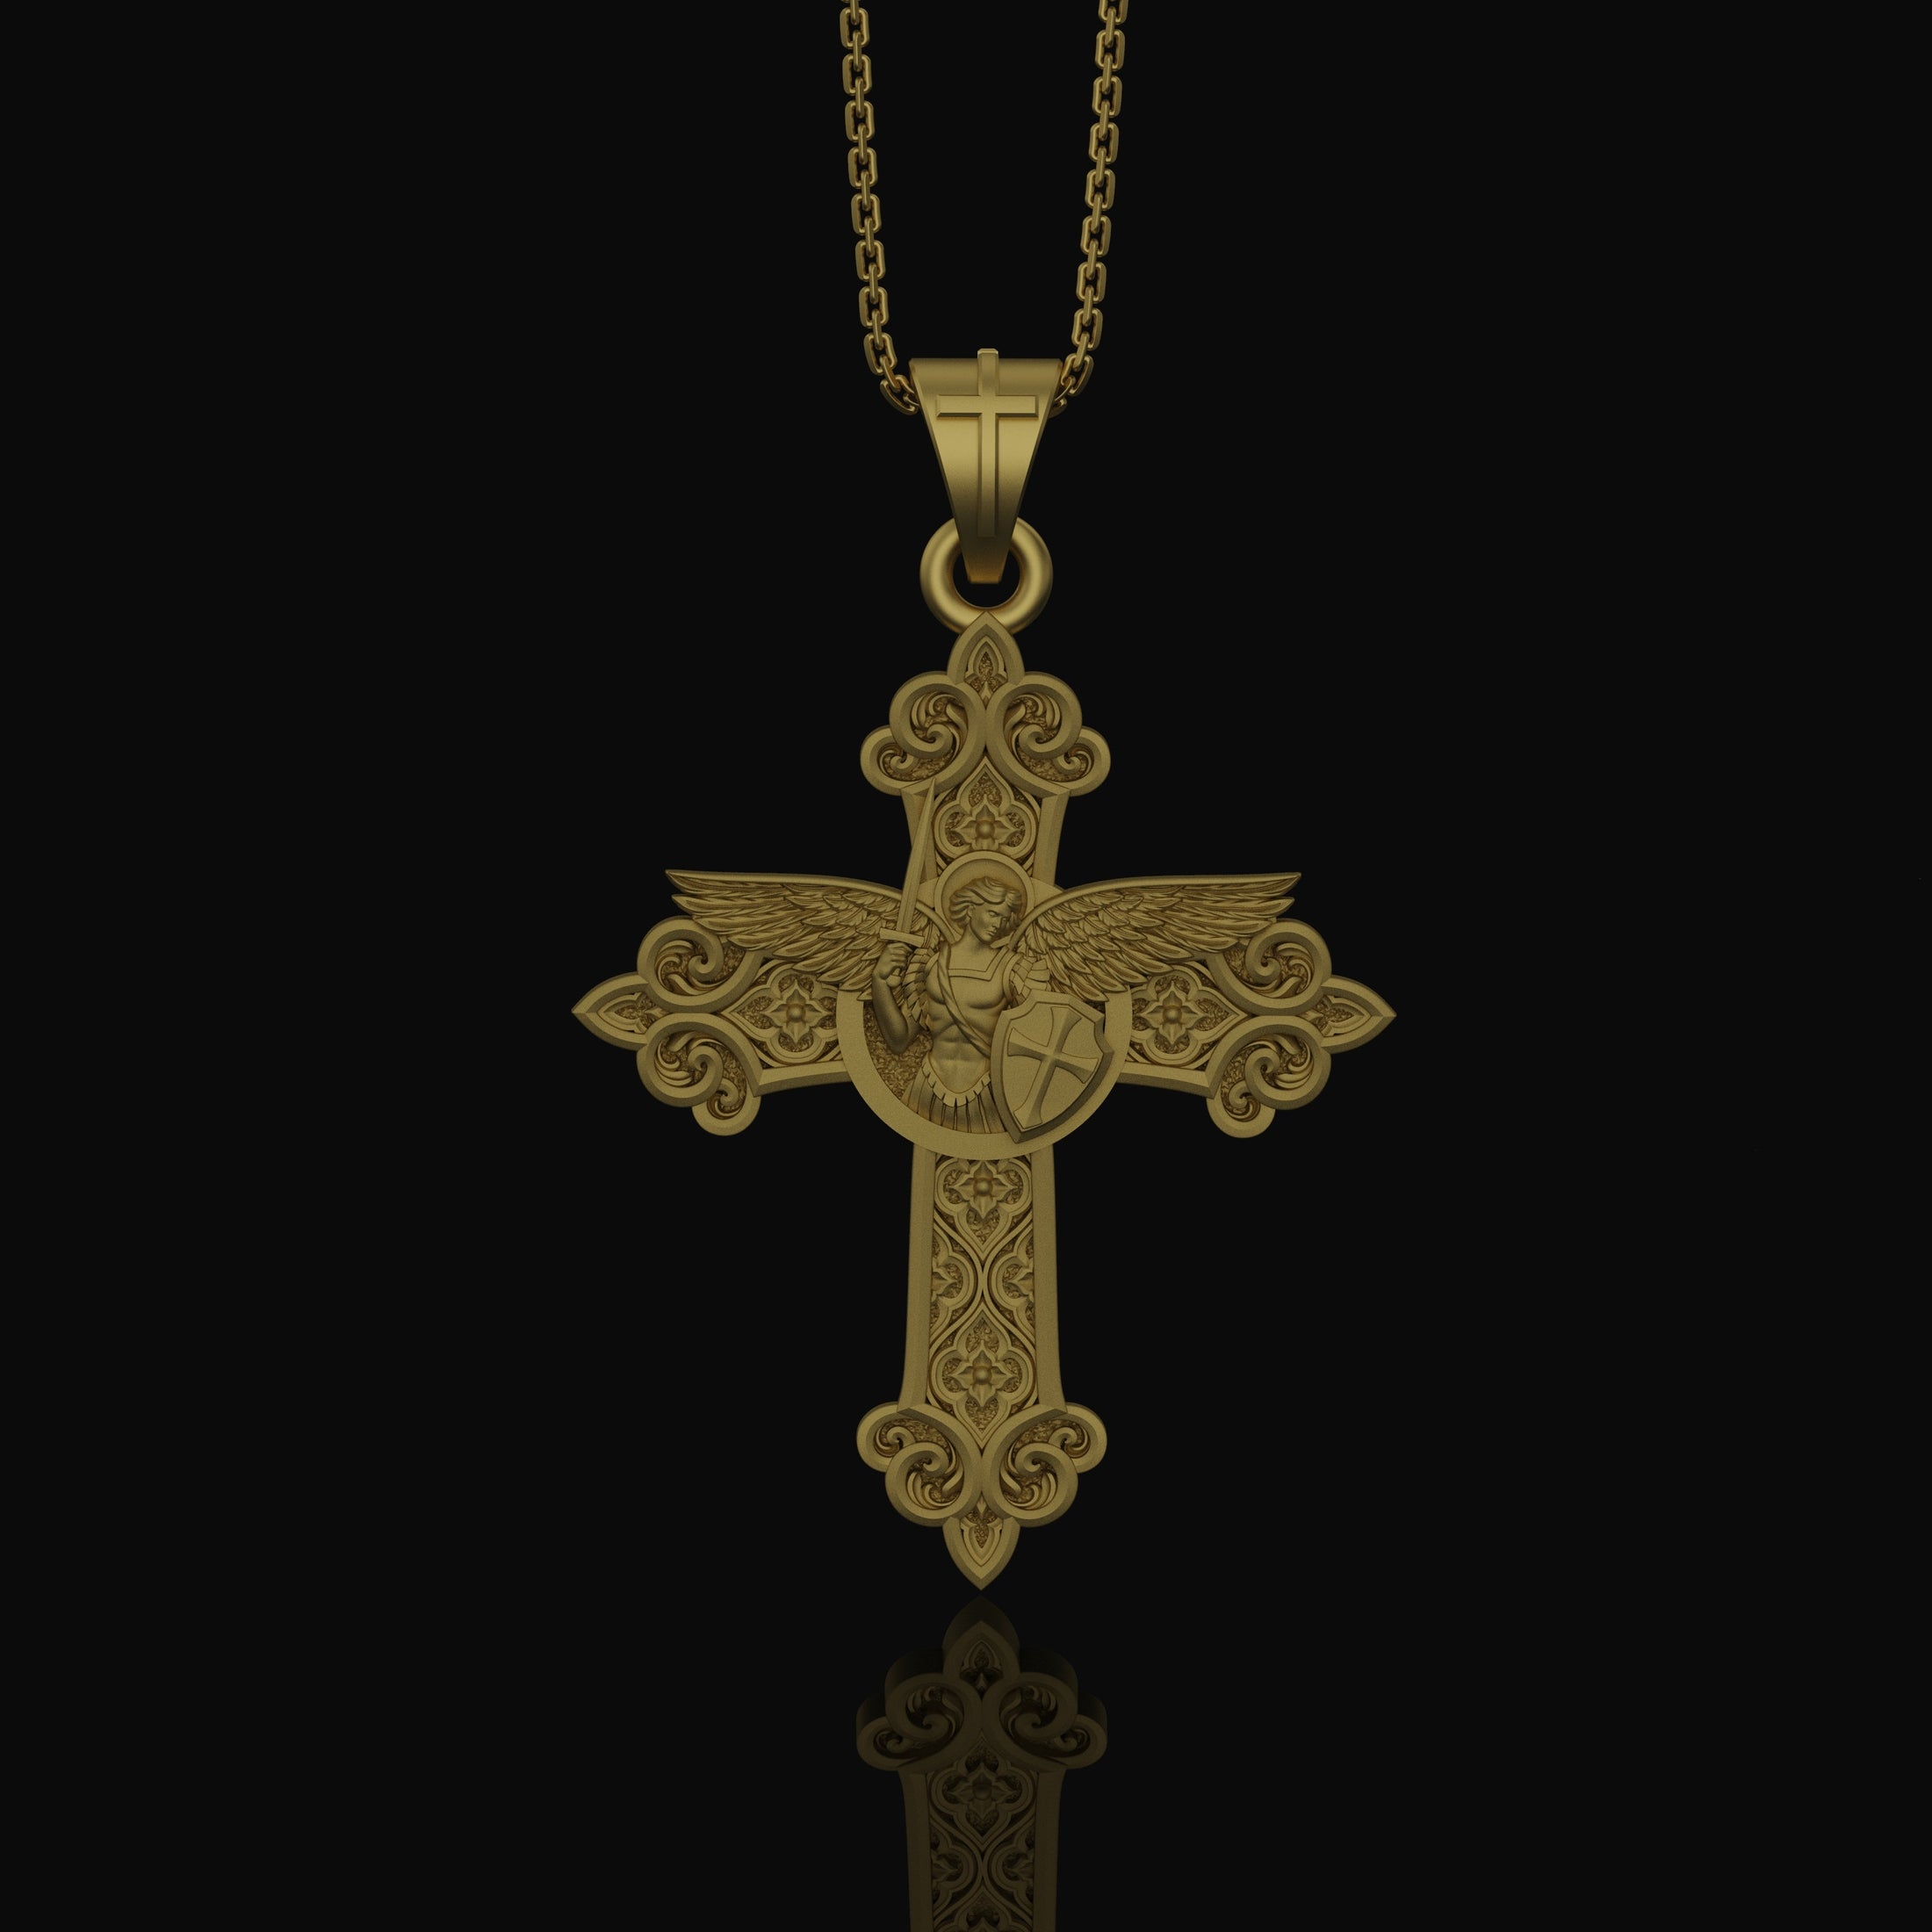 St. Michael Protection Silver Cross, 'Quis ut Deus' Engraved, Archangel Michael Amulet, Symbol of Divine Guard Gold Matte